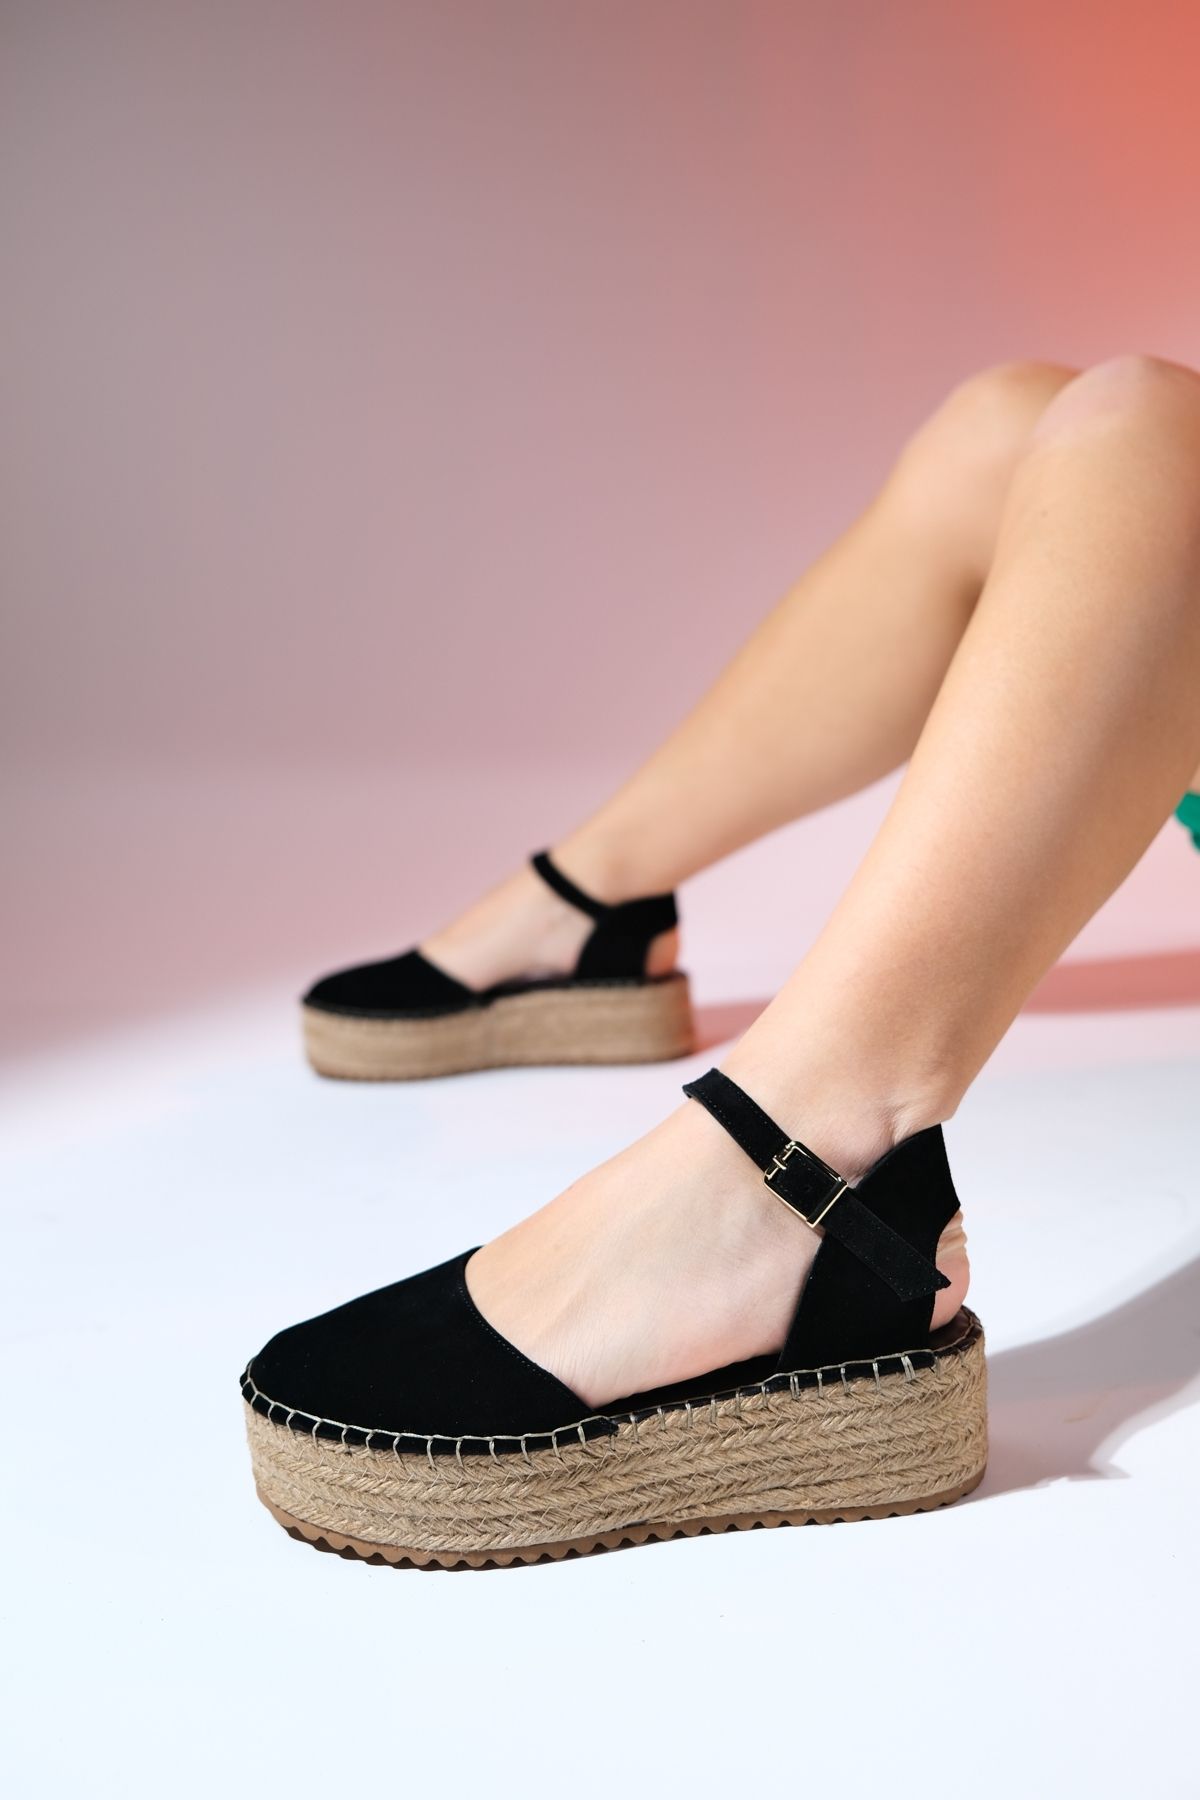 luvishoes VİBA Siyah Süet Hakiki Deri Kadın Hasır Dolgu Taban Sandalet